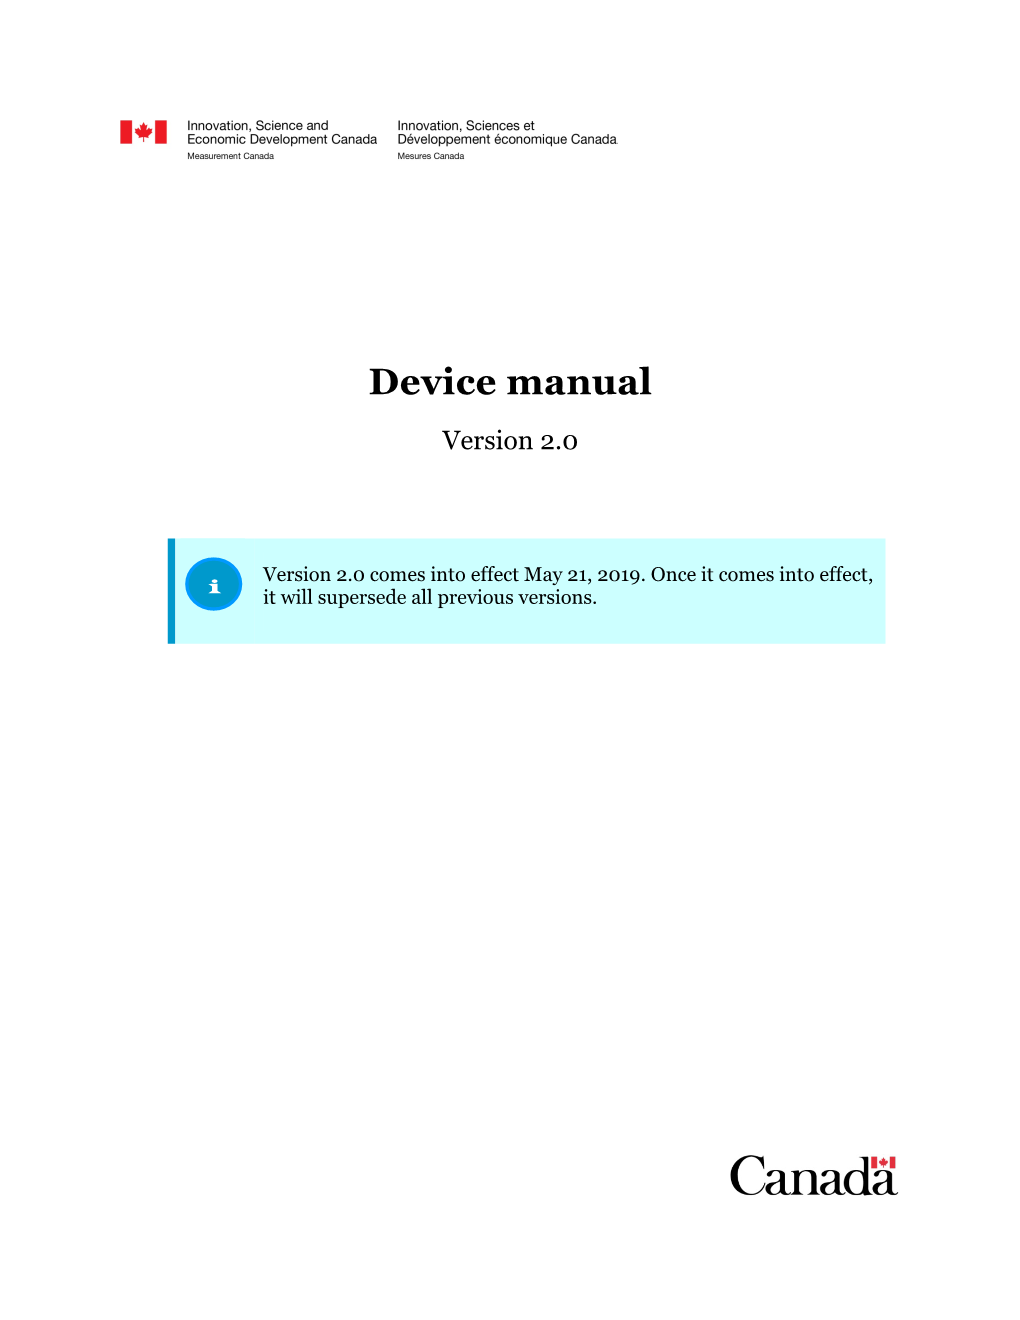 Device Manual, Version 2.0, May 21, 2019